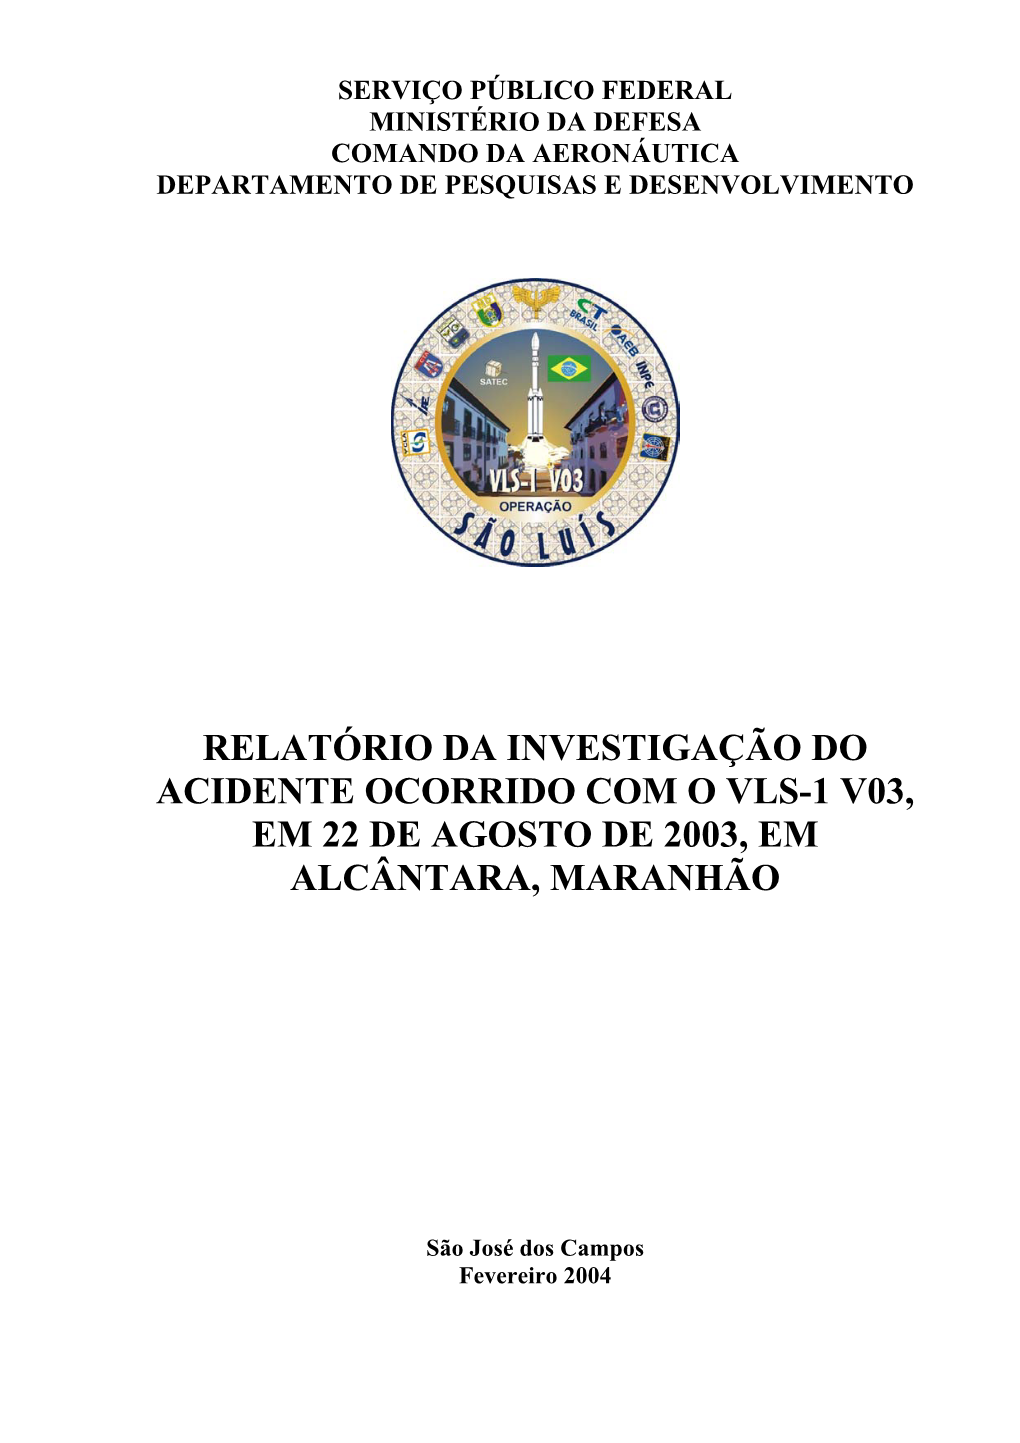 Relatório Da Investigação Do Acidente Ocorrido Com O Vls-1 V03, Em 22 De Agosto De 2003, Em Alcântara, Maranhão